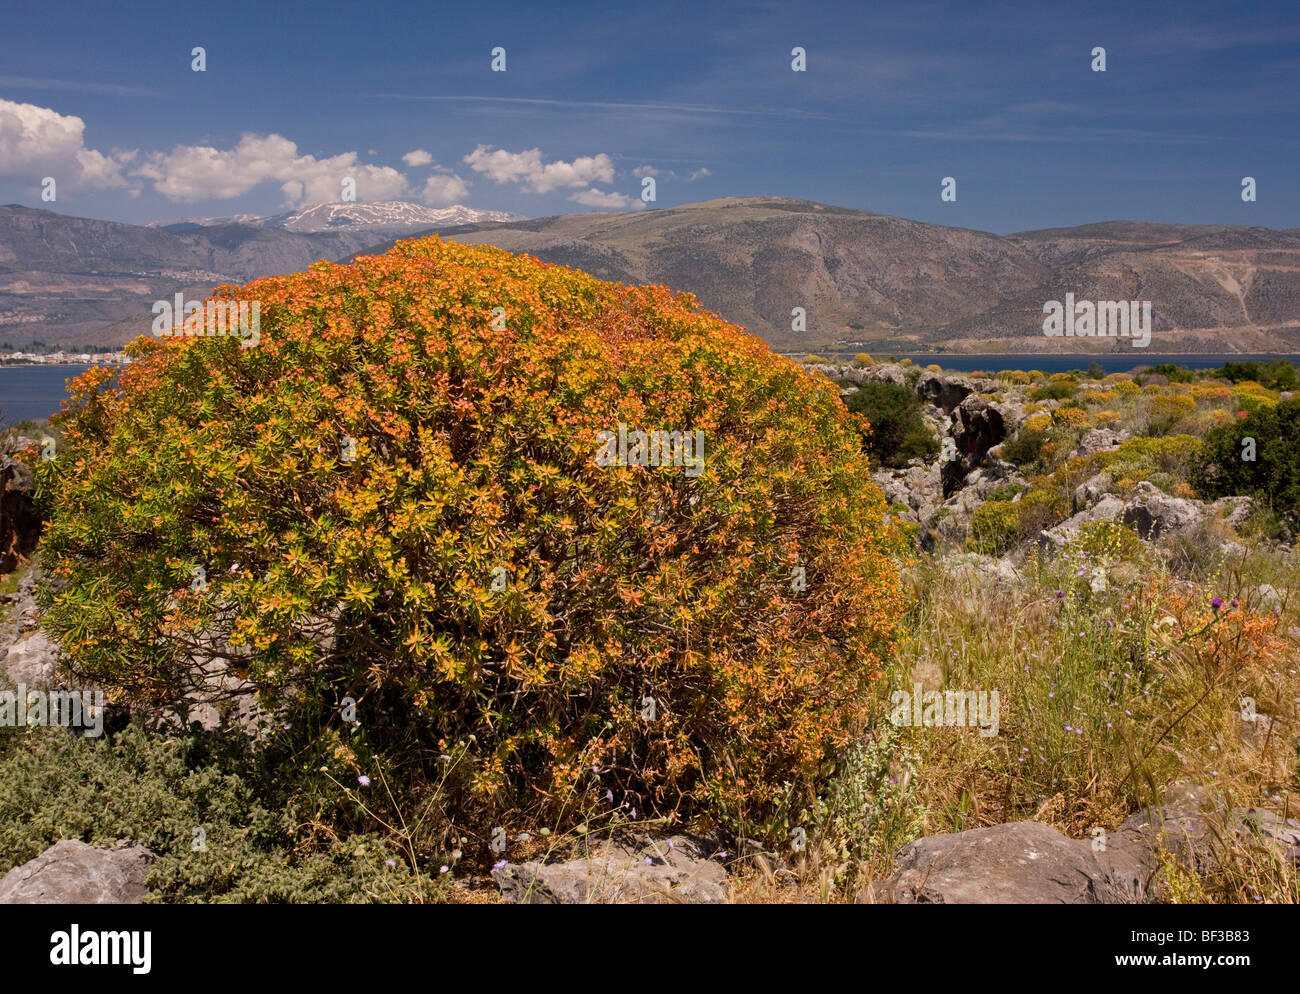 Arbre généalogique de masse Spurge Euphorbia dendroides début à la couleur ; sur les rives du golfe de Corinthe (Grèce), Corinthe. Banque D'Images